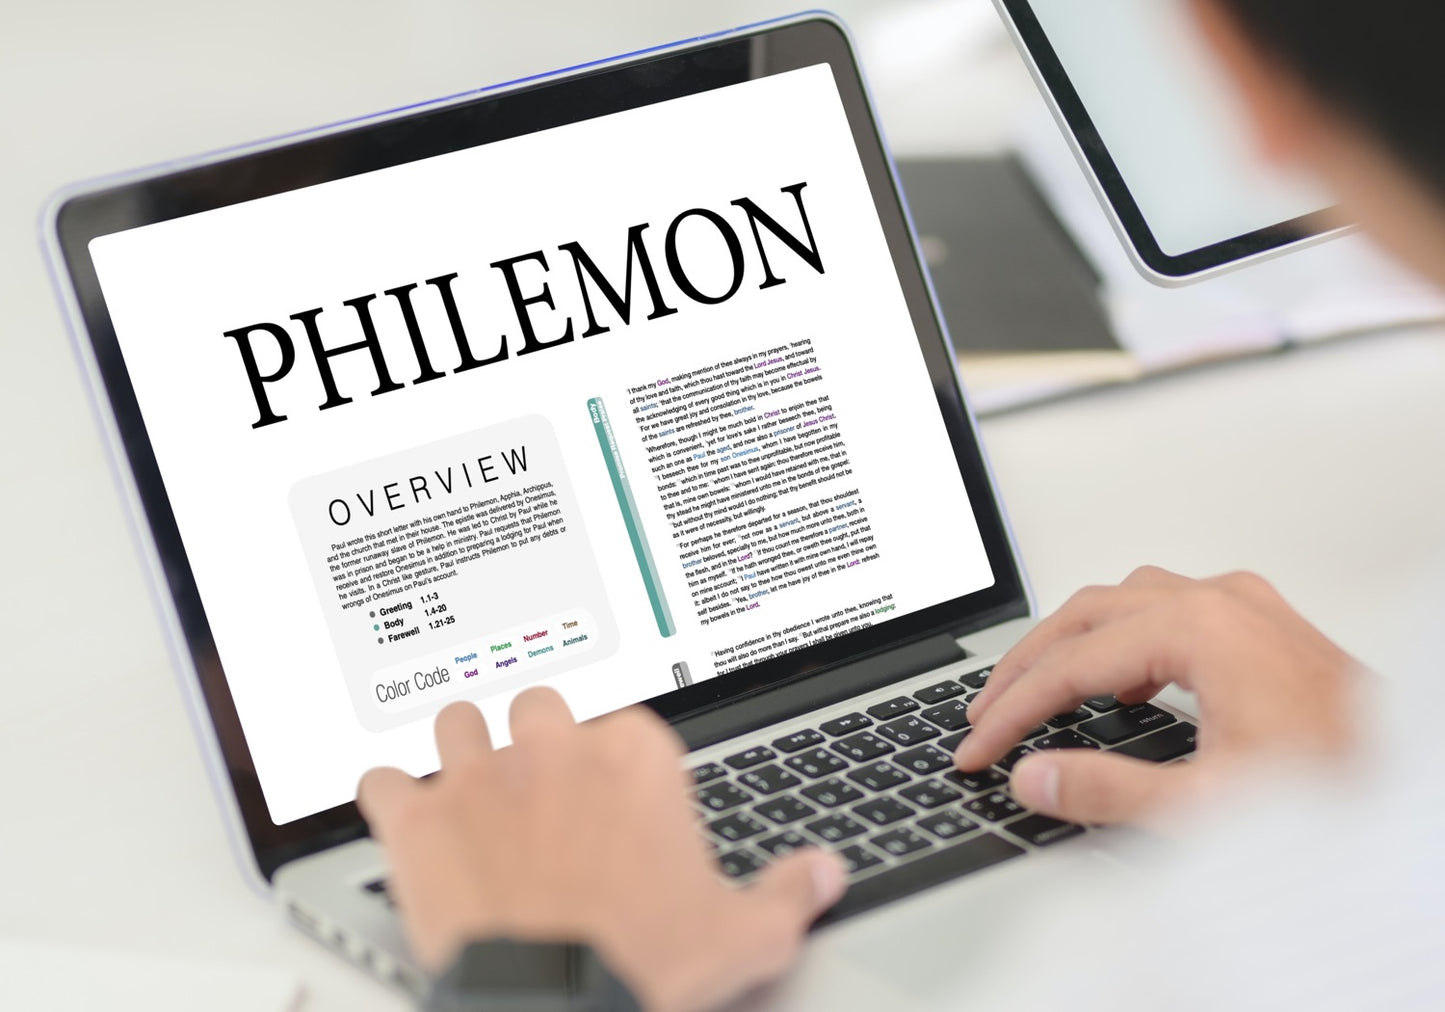 Philemon Panorama PDF